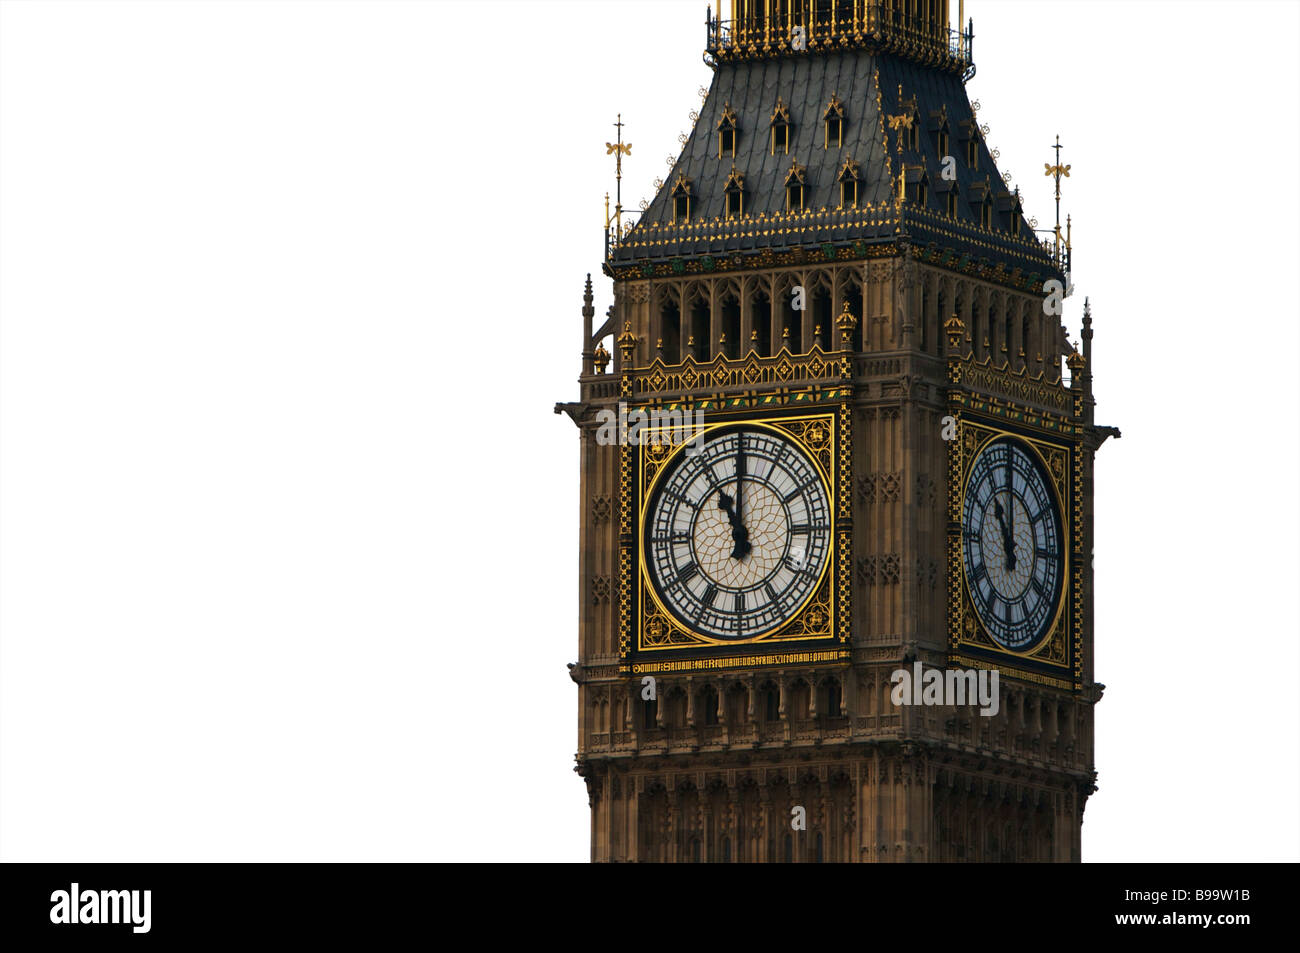 La tour de l'horloge de Big Ben Londres Angleterre isolé sur fond blanc Banque D'Images